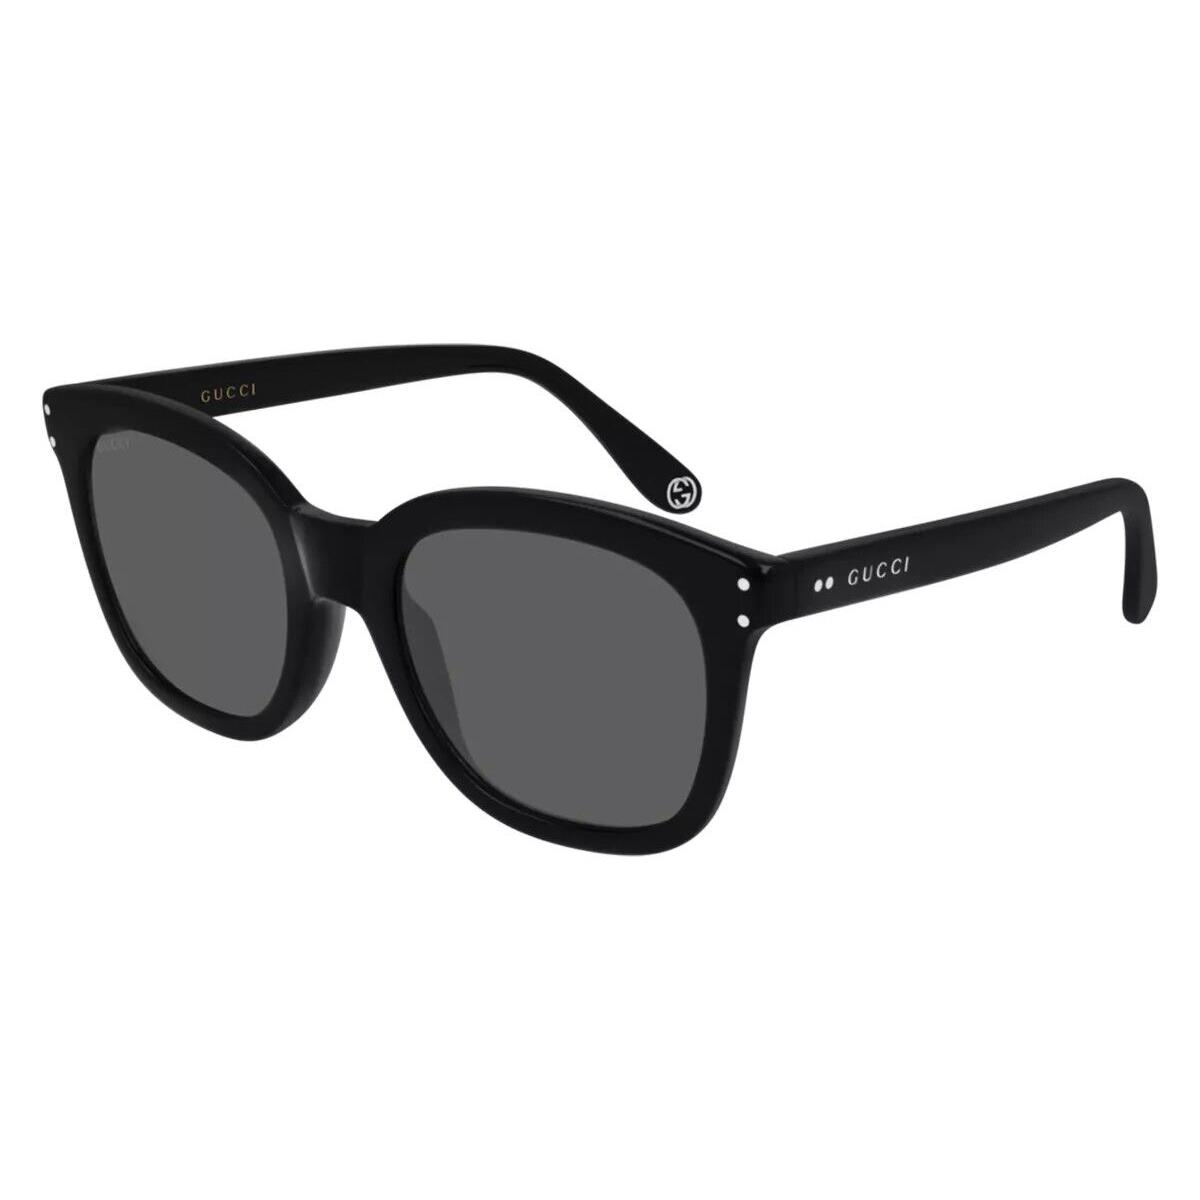 Gucci Sunglasses GG0571S 001 Black /grey Lens Square 52mm